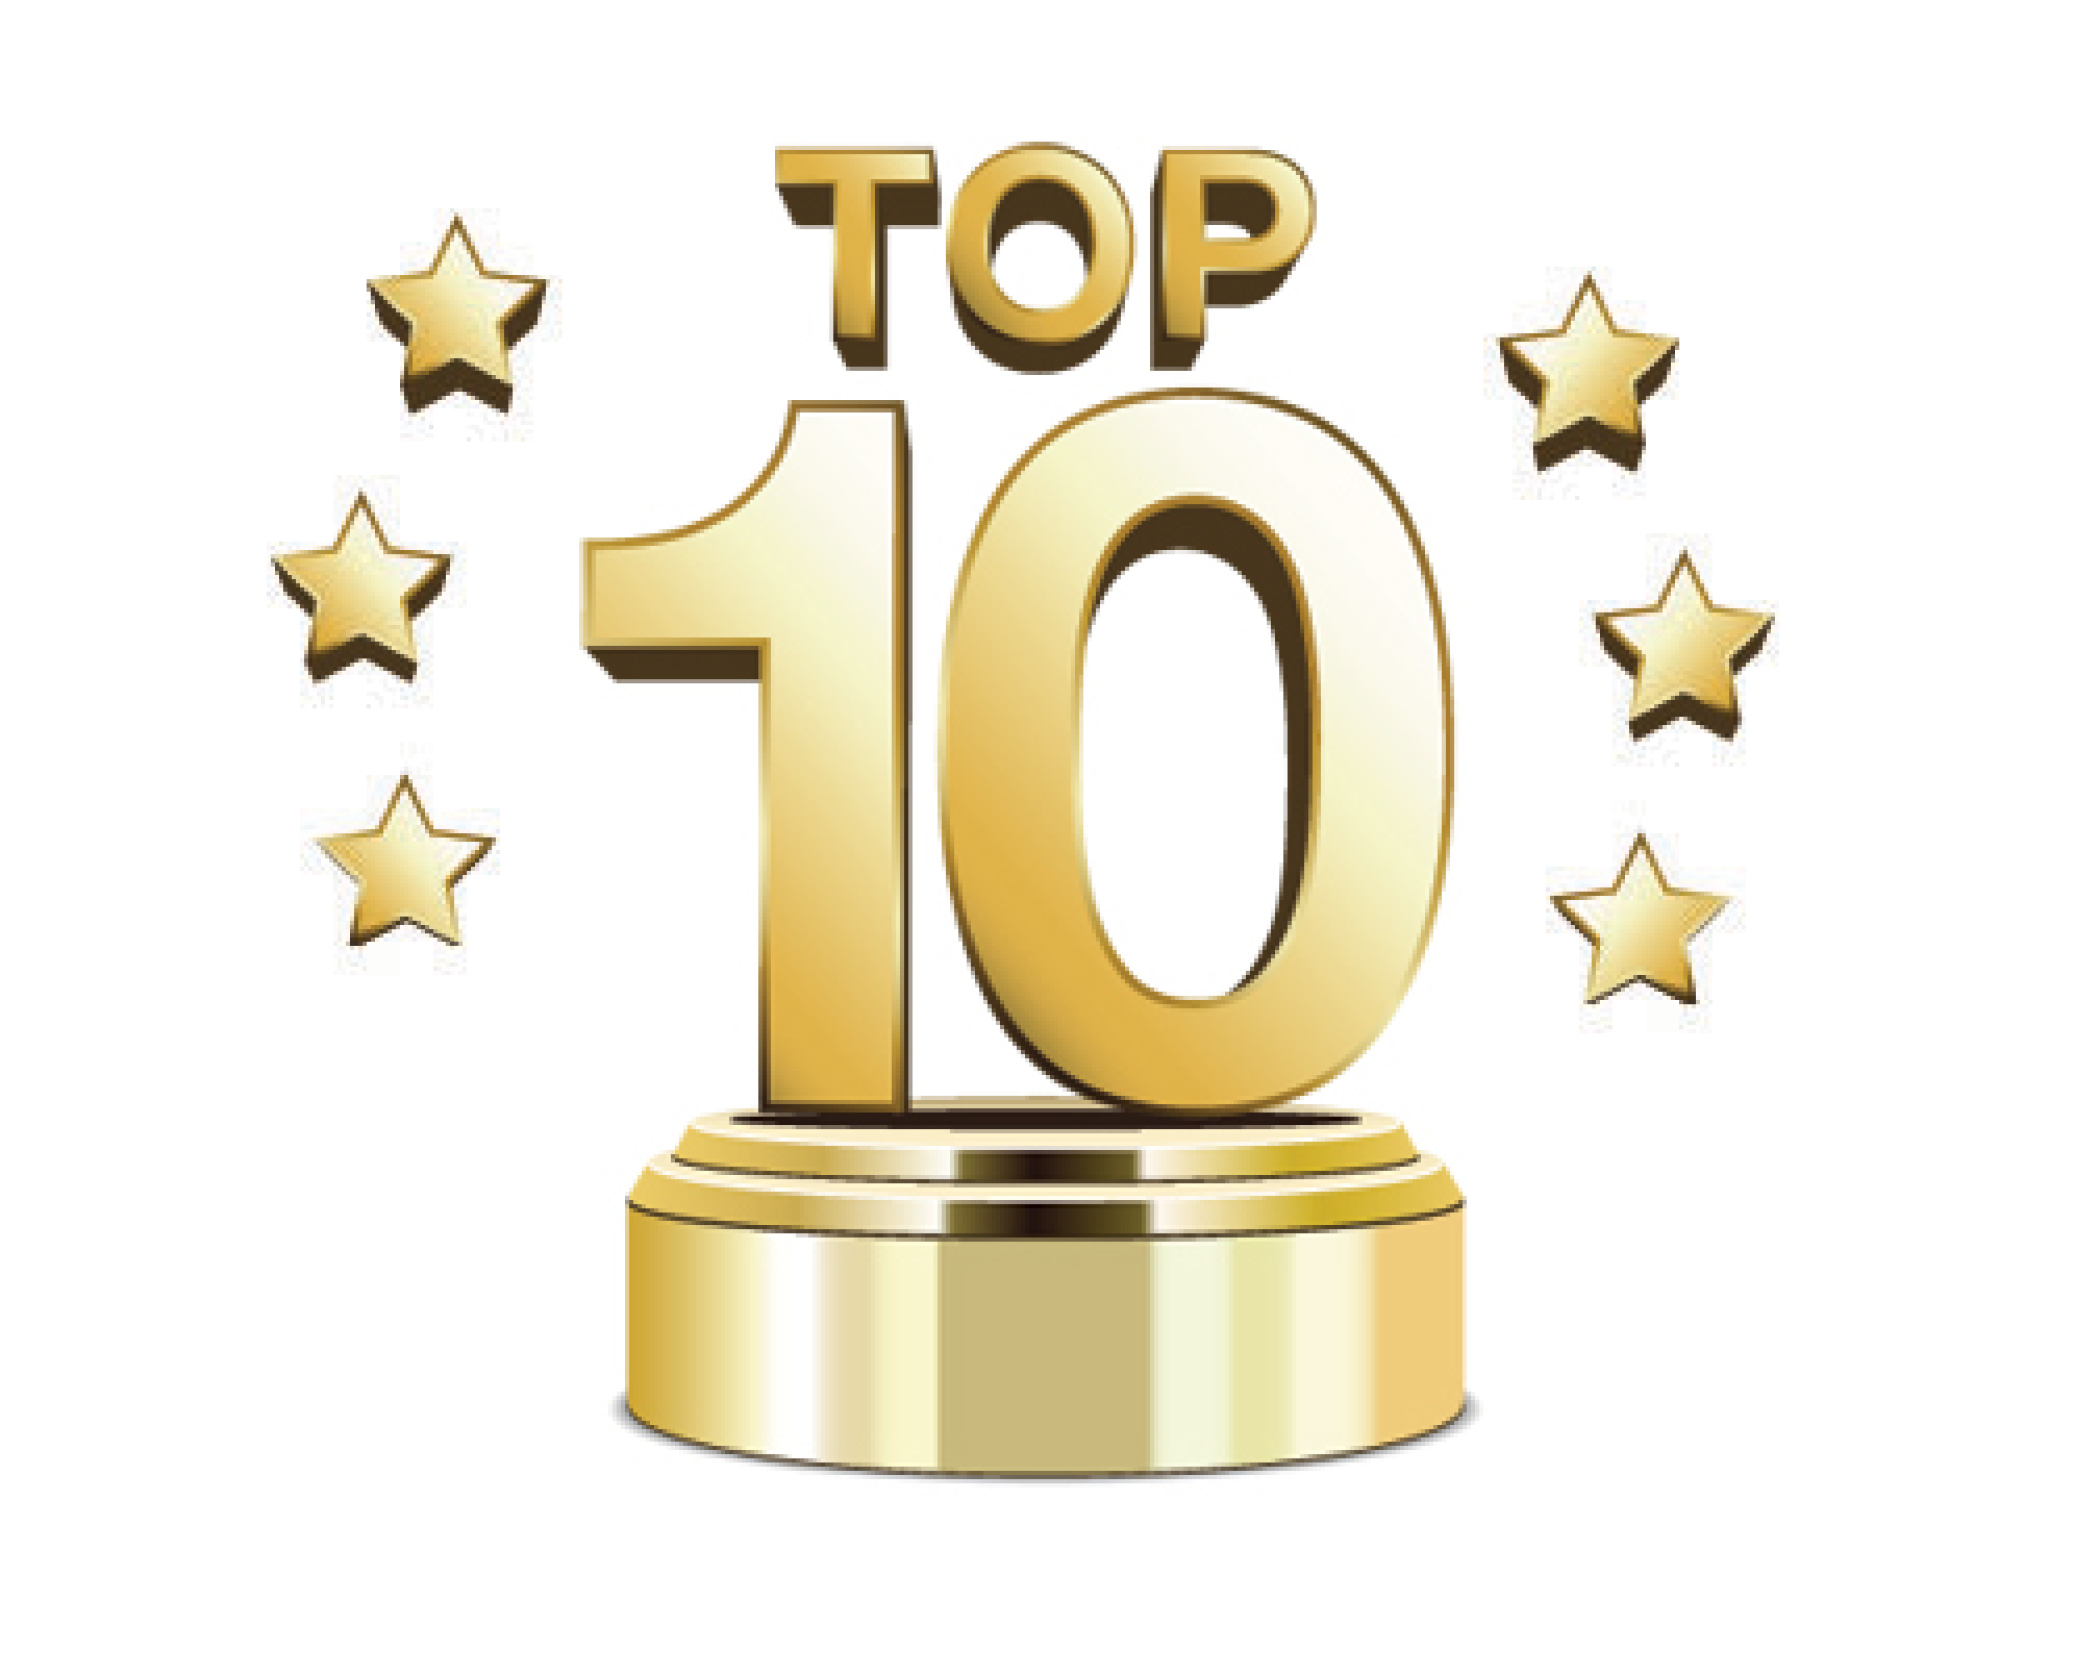 Top-10-trophy2